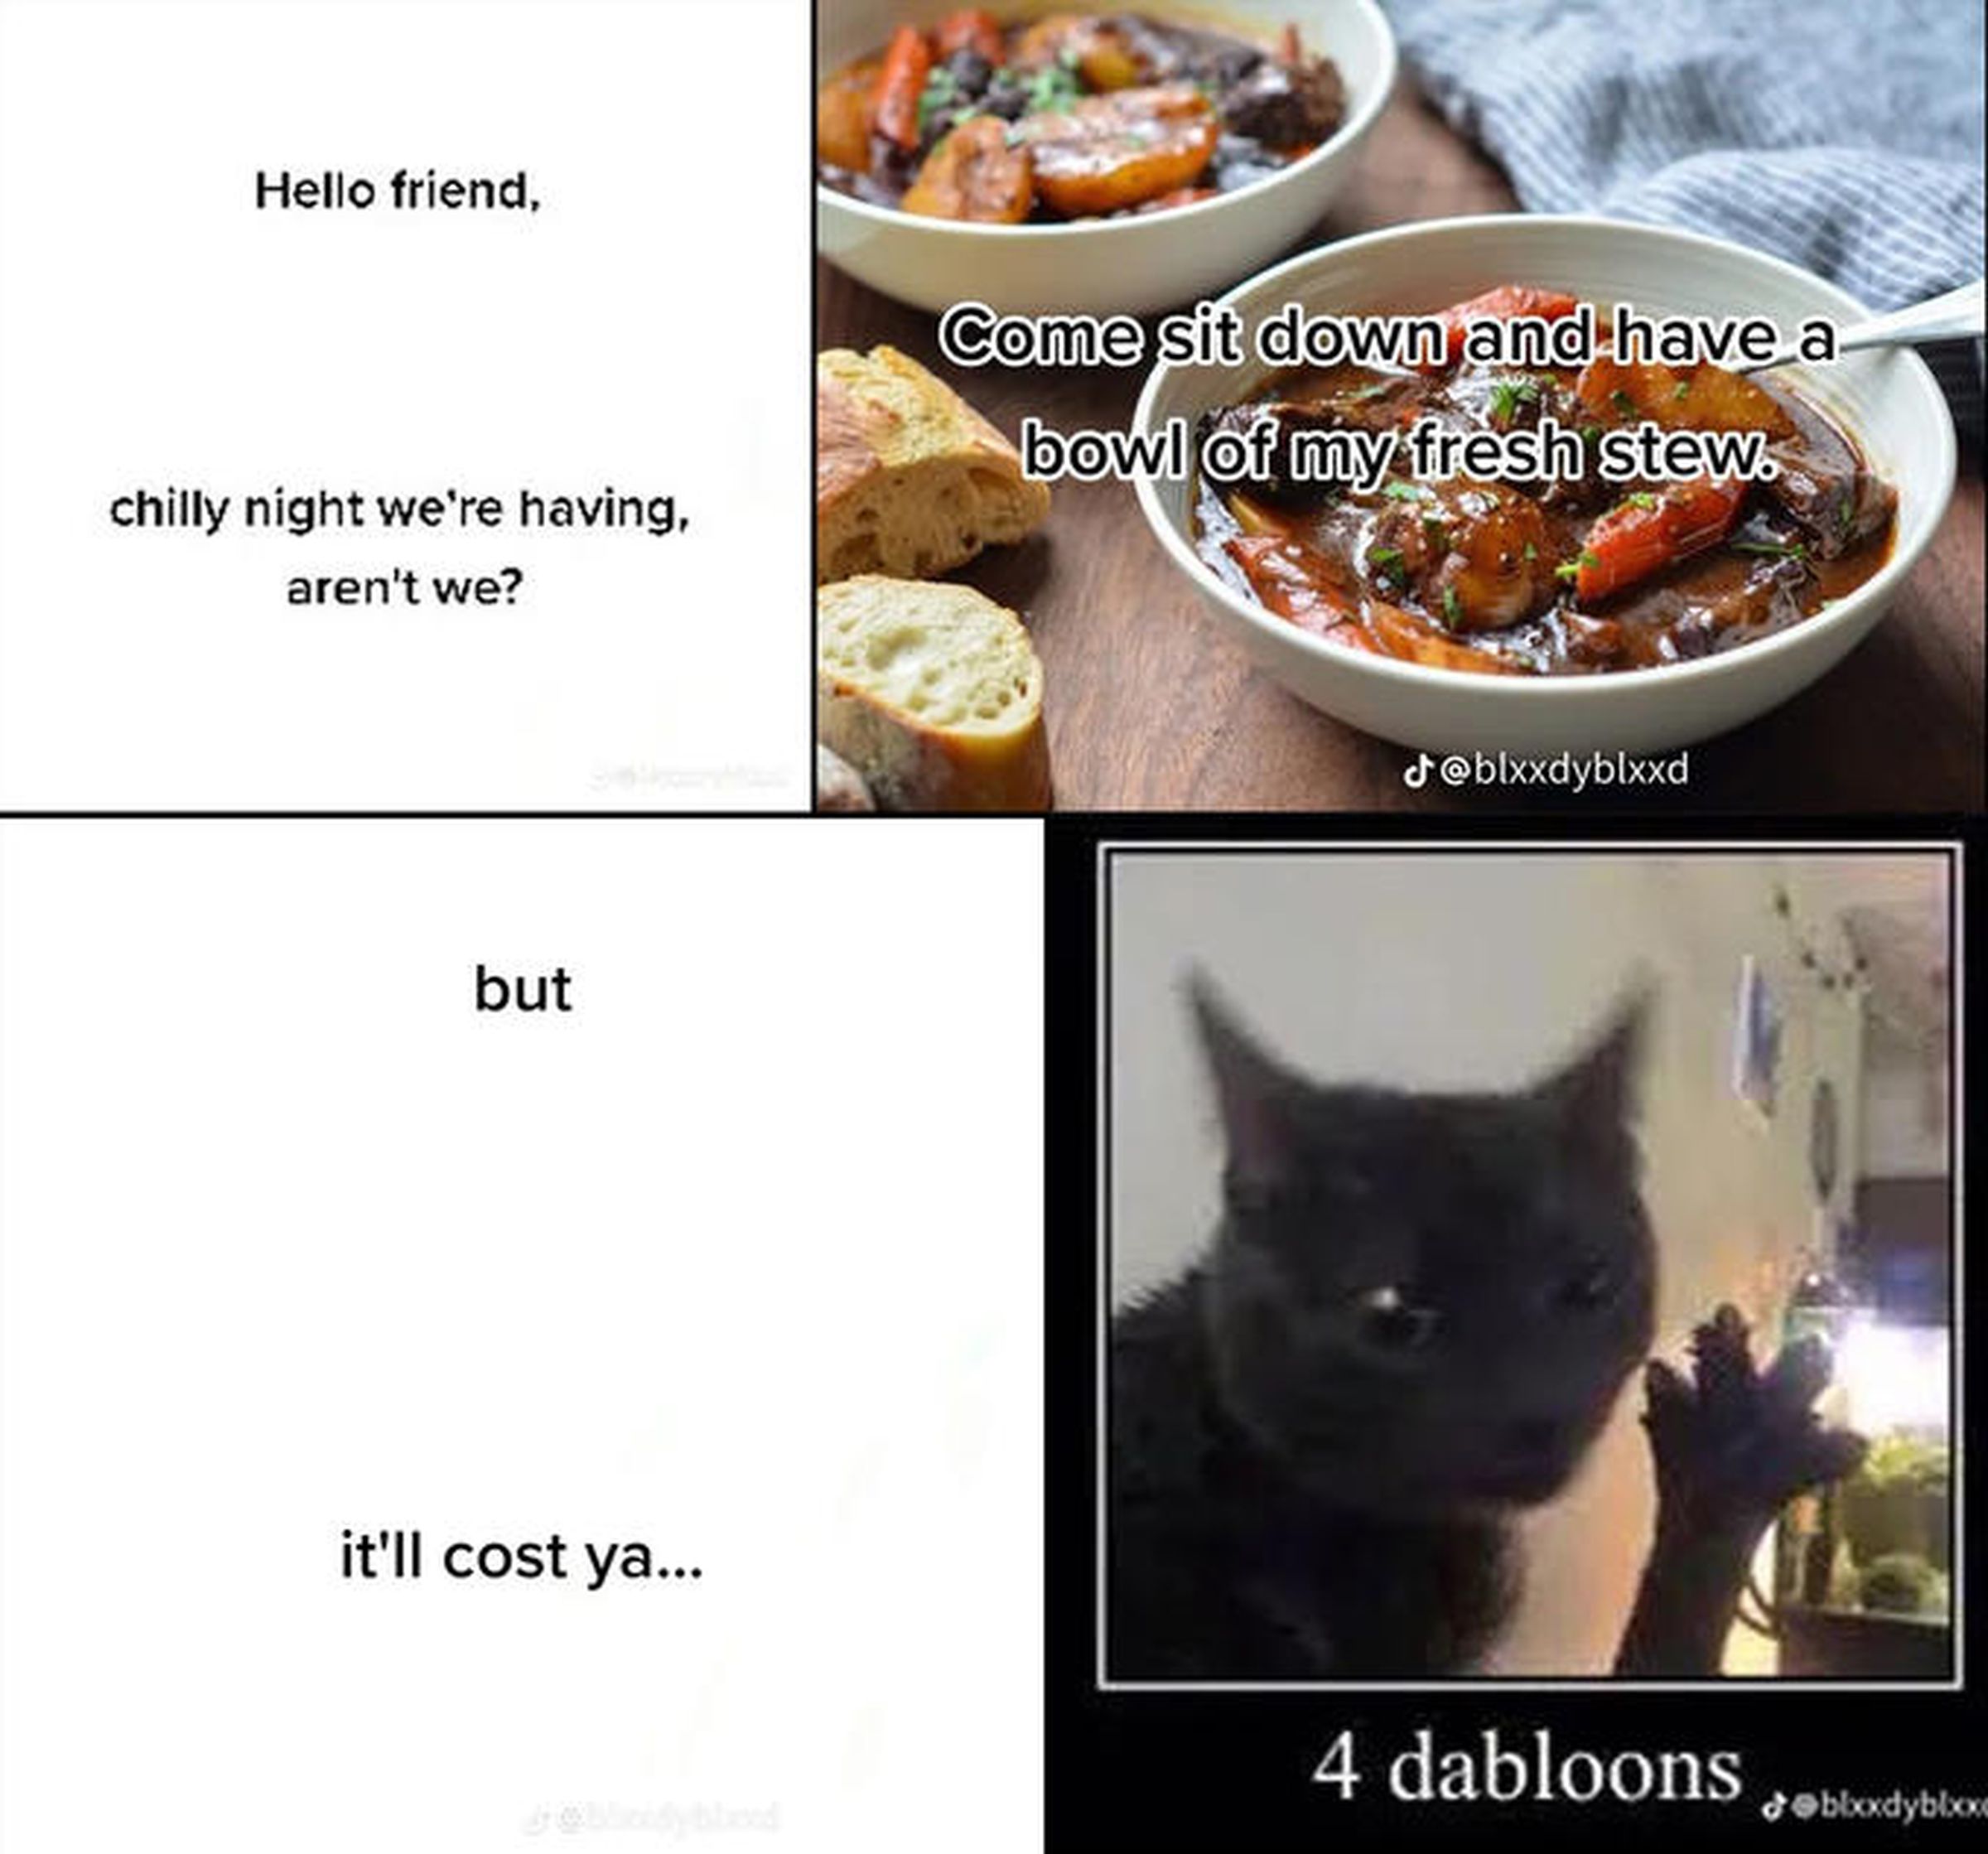 Четырехпанельный мем, в котором кот предлагает пользователю немного тушеного мяса в обмен на «даблоны».